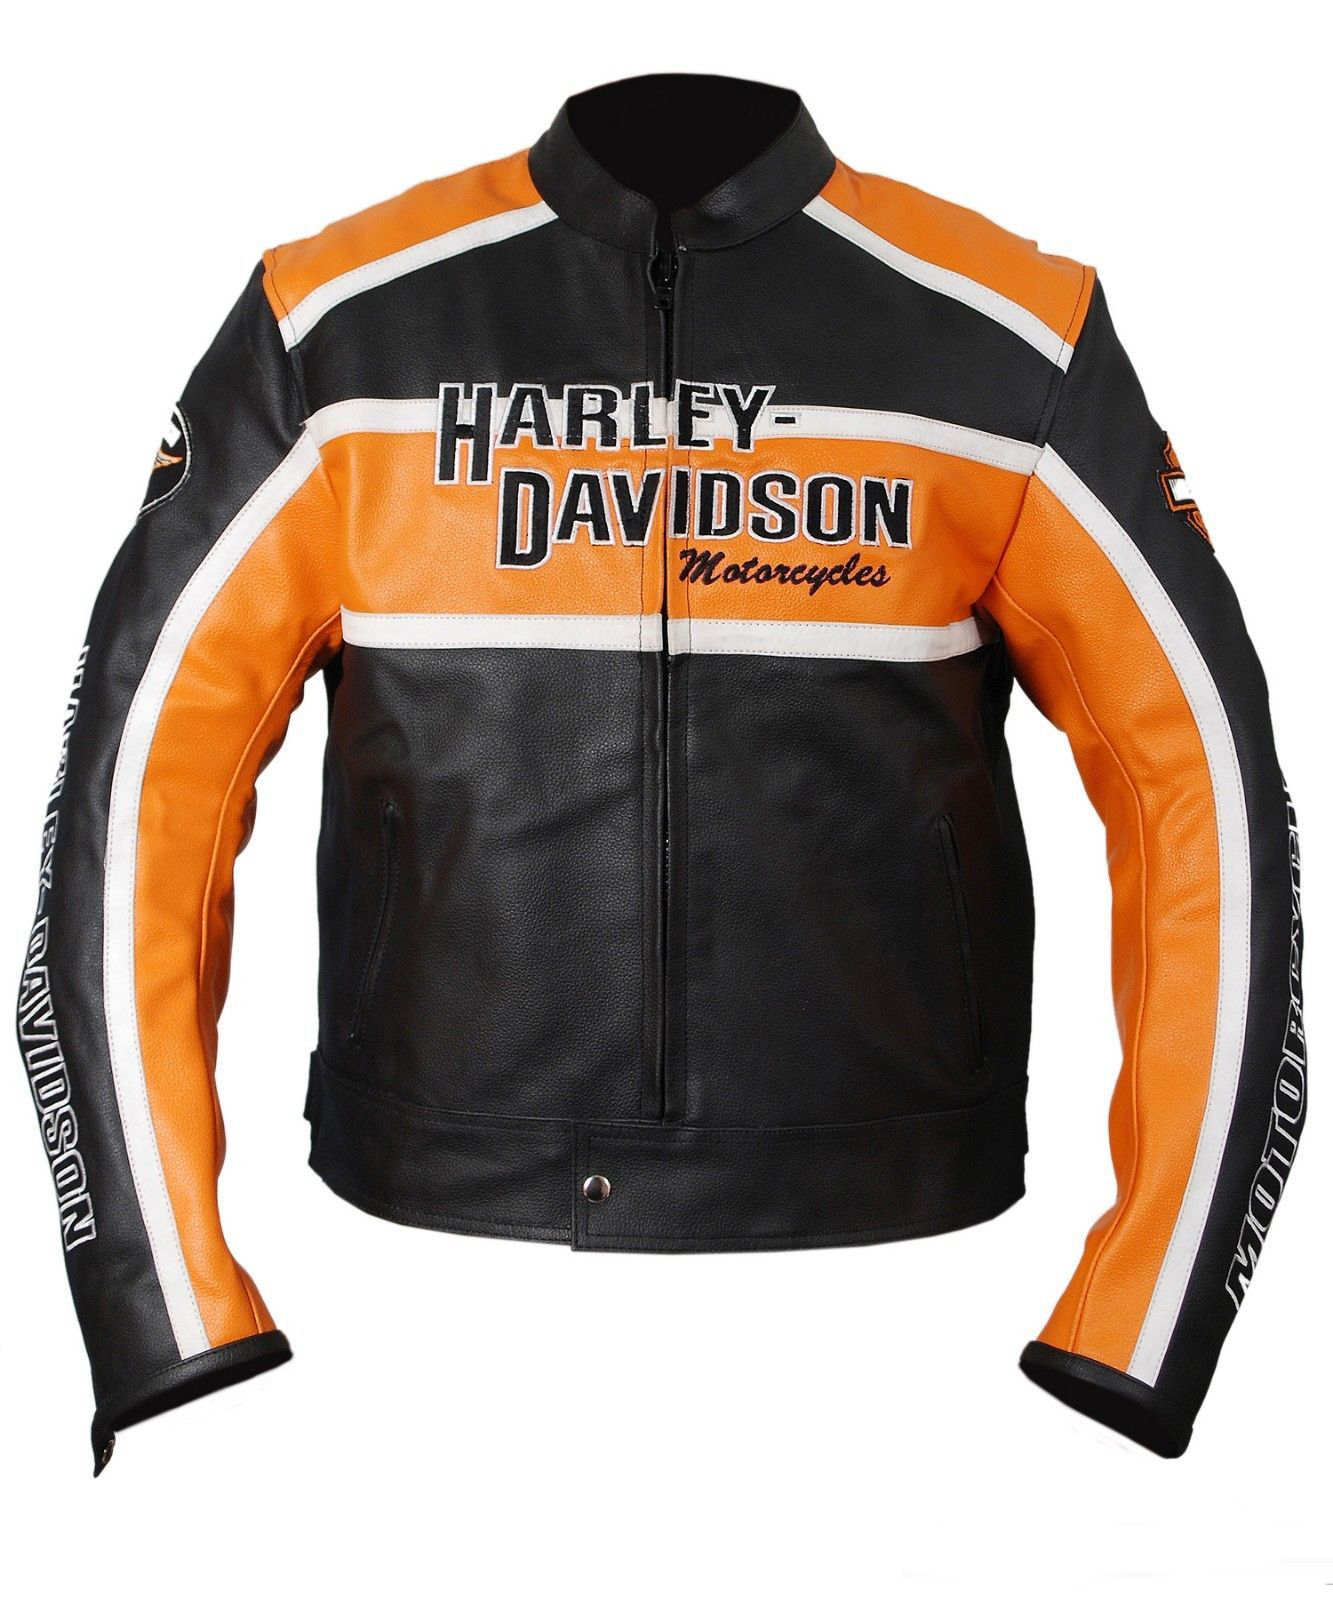 Harley Davidson Leather Jacket France | tyello.com